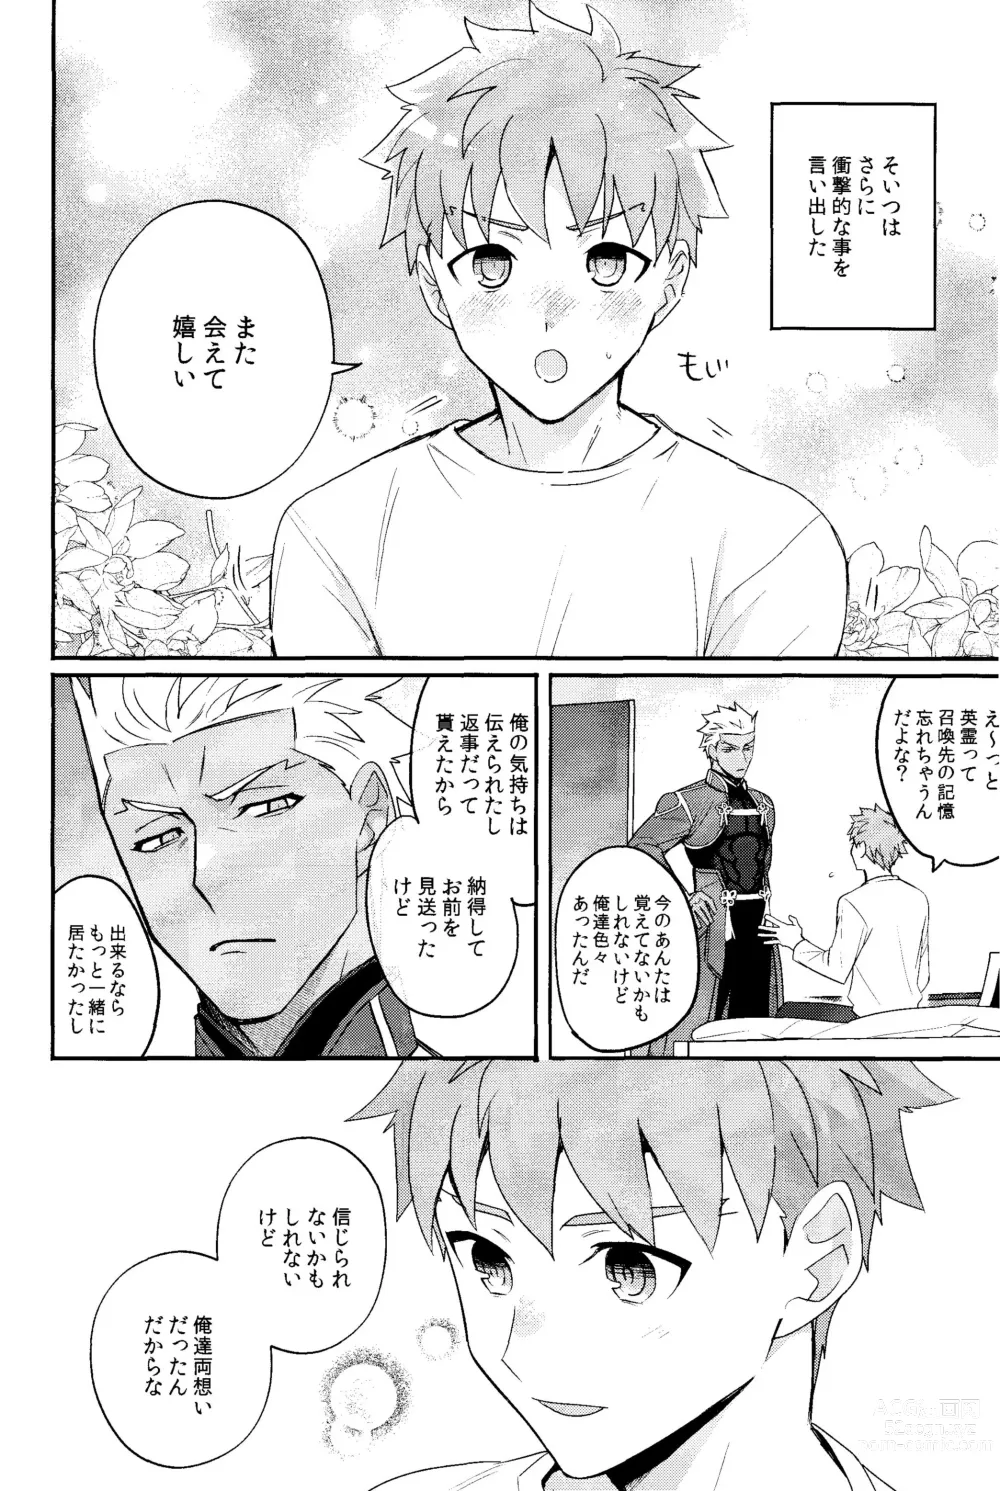 Page 5 of doujinshi Iru